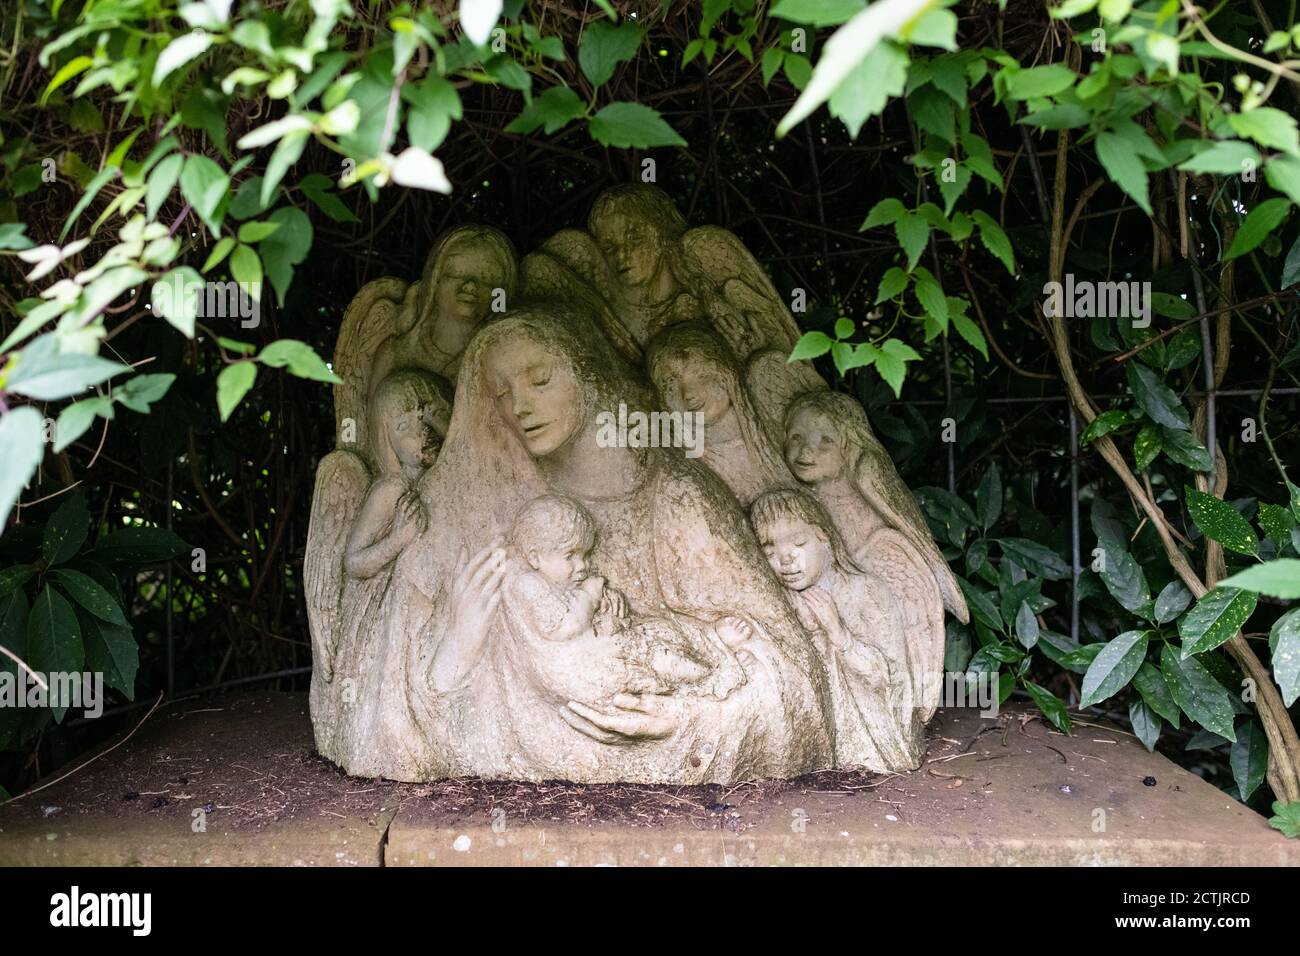 Adoration de la sculpture des saints Innocents par Josefina de Vasconcellos dans le jardin de l'enfant endormi, église du Prieuré de St Bees, St Bees, Cumbria, Angleterre Banque D'Images